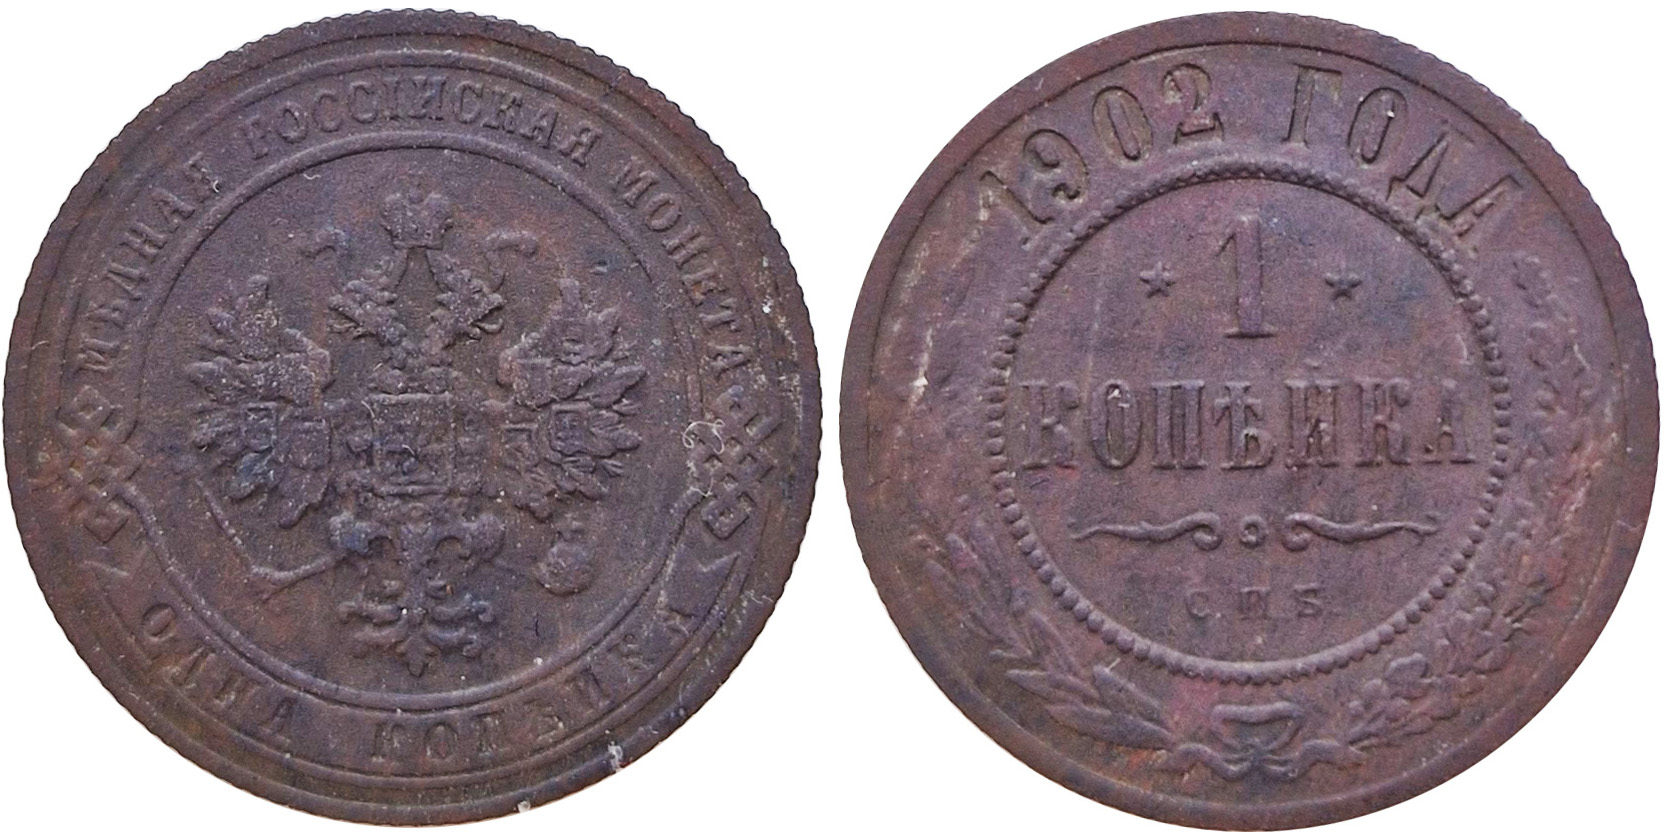 1 Копейка 1902 год. Санкт-Петербургский монетный двор